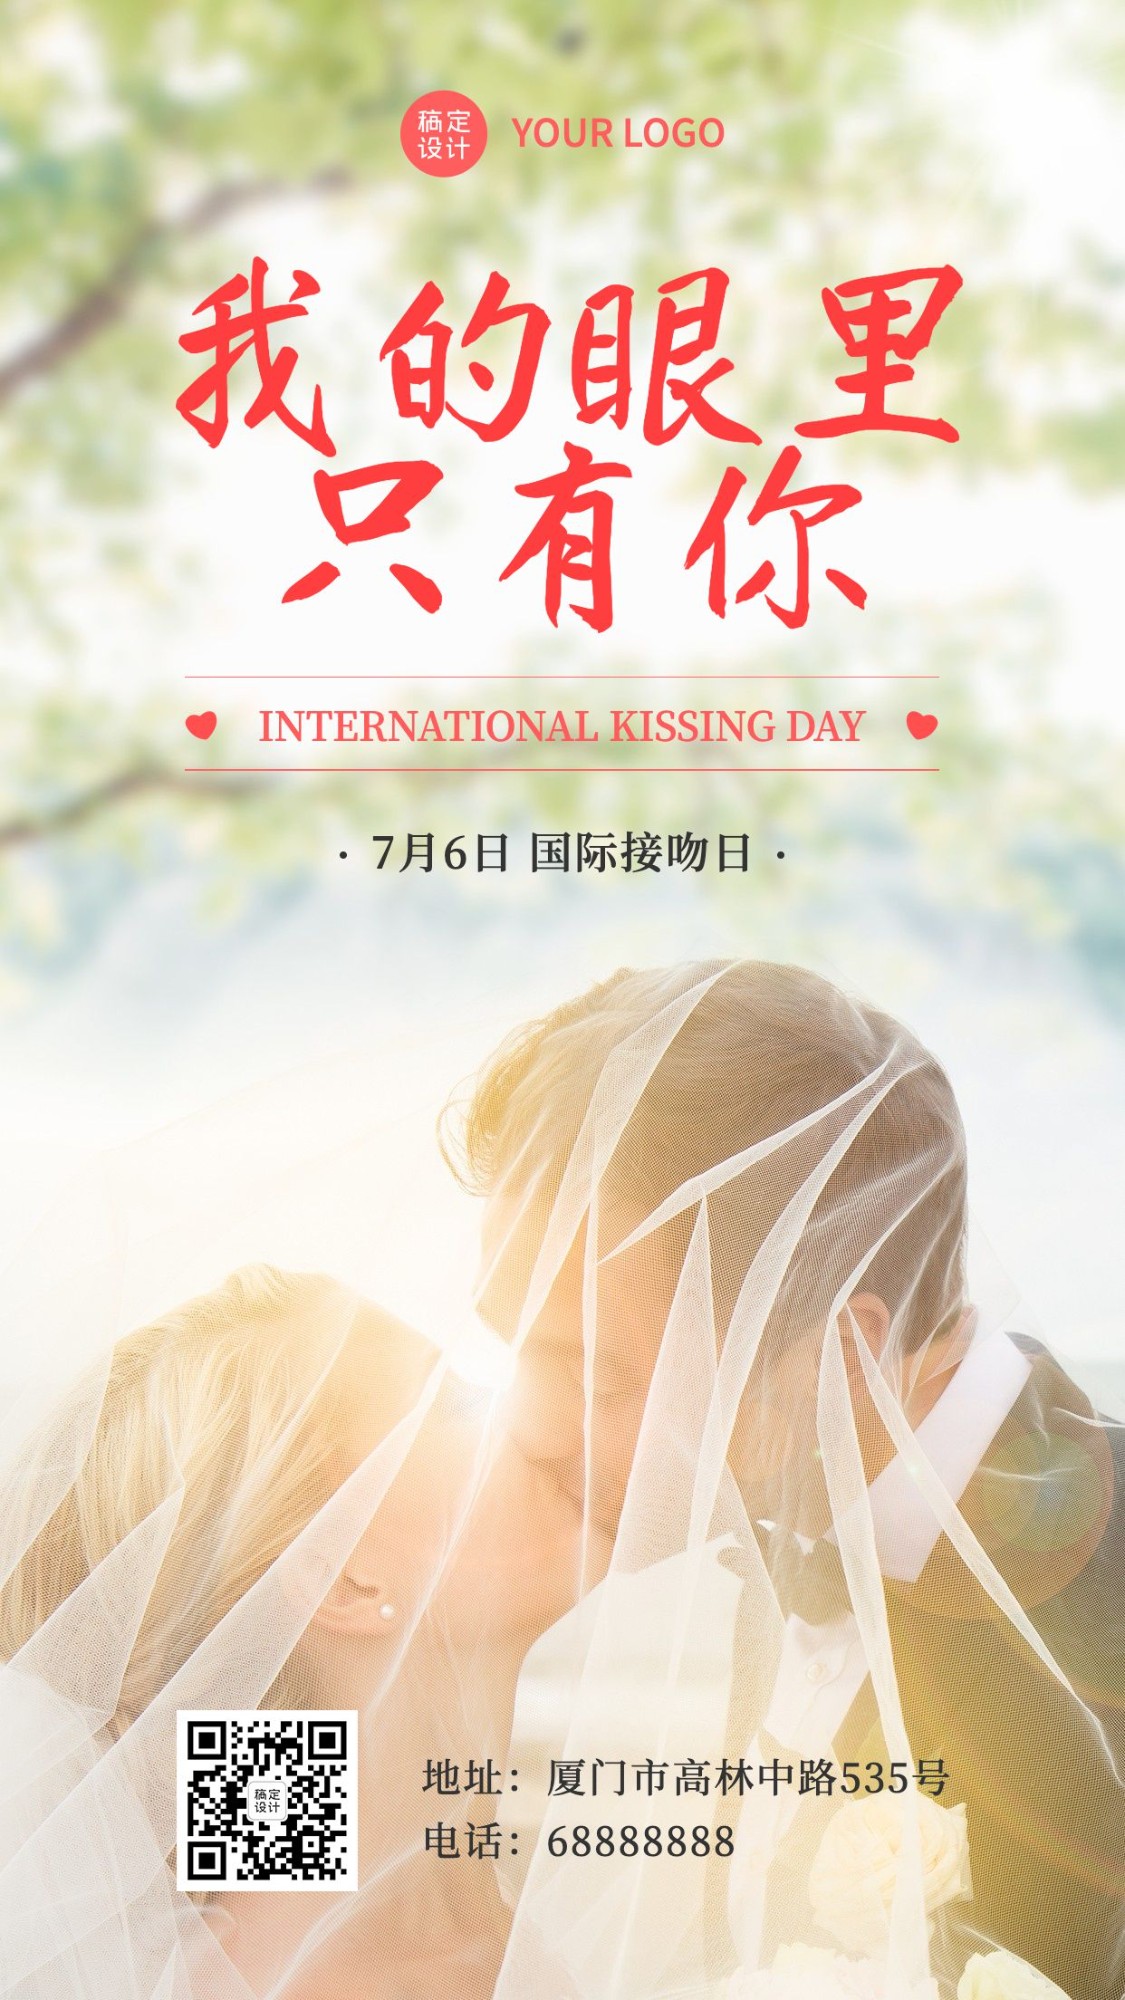 国际接吻日礼仪情侣手机海报